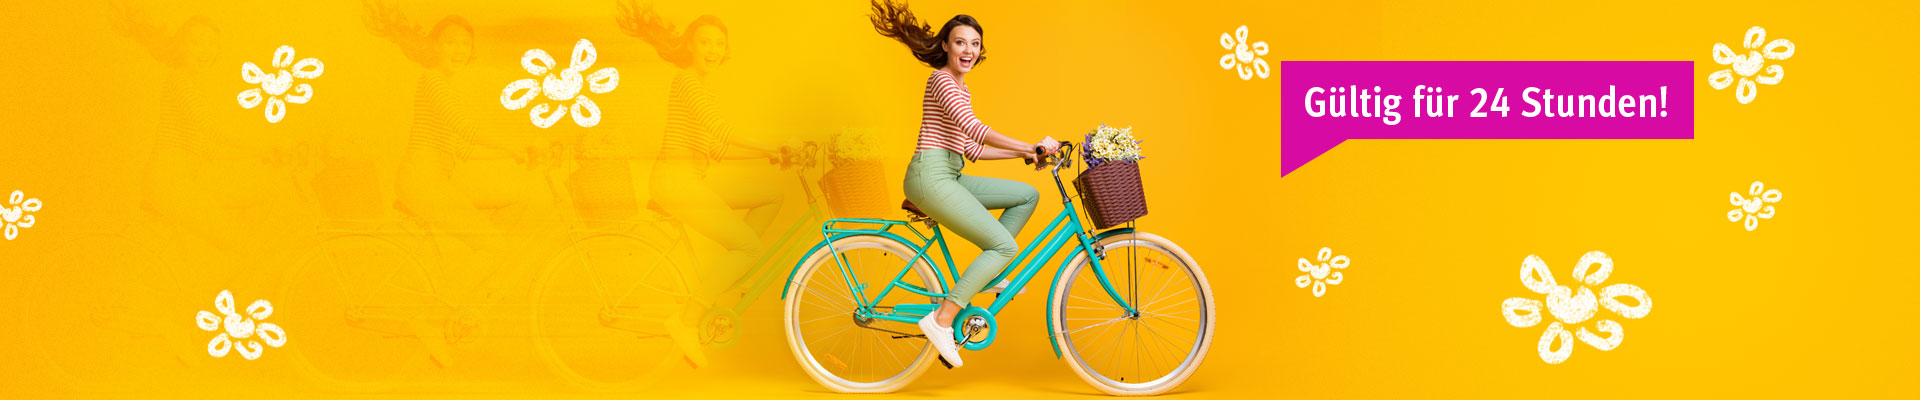 Eine Frau auf dem Fahrrad genießt die Gültigkeit von 24 Stunden des Fahrrad Tickets